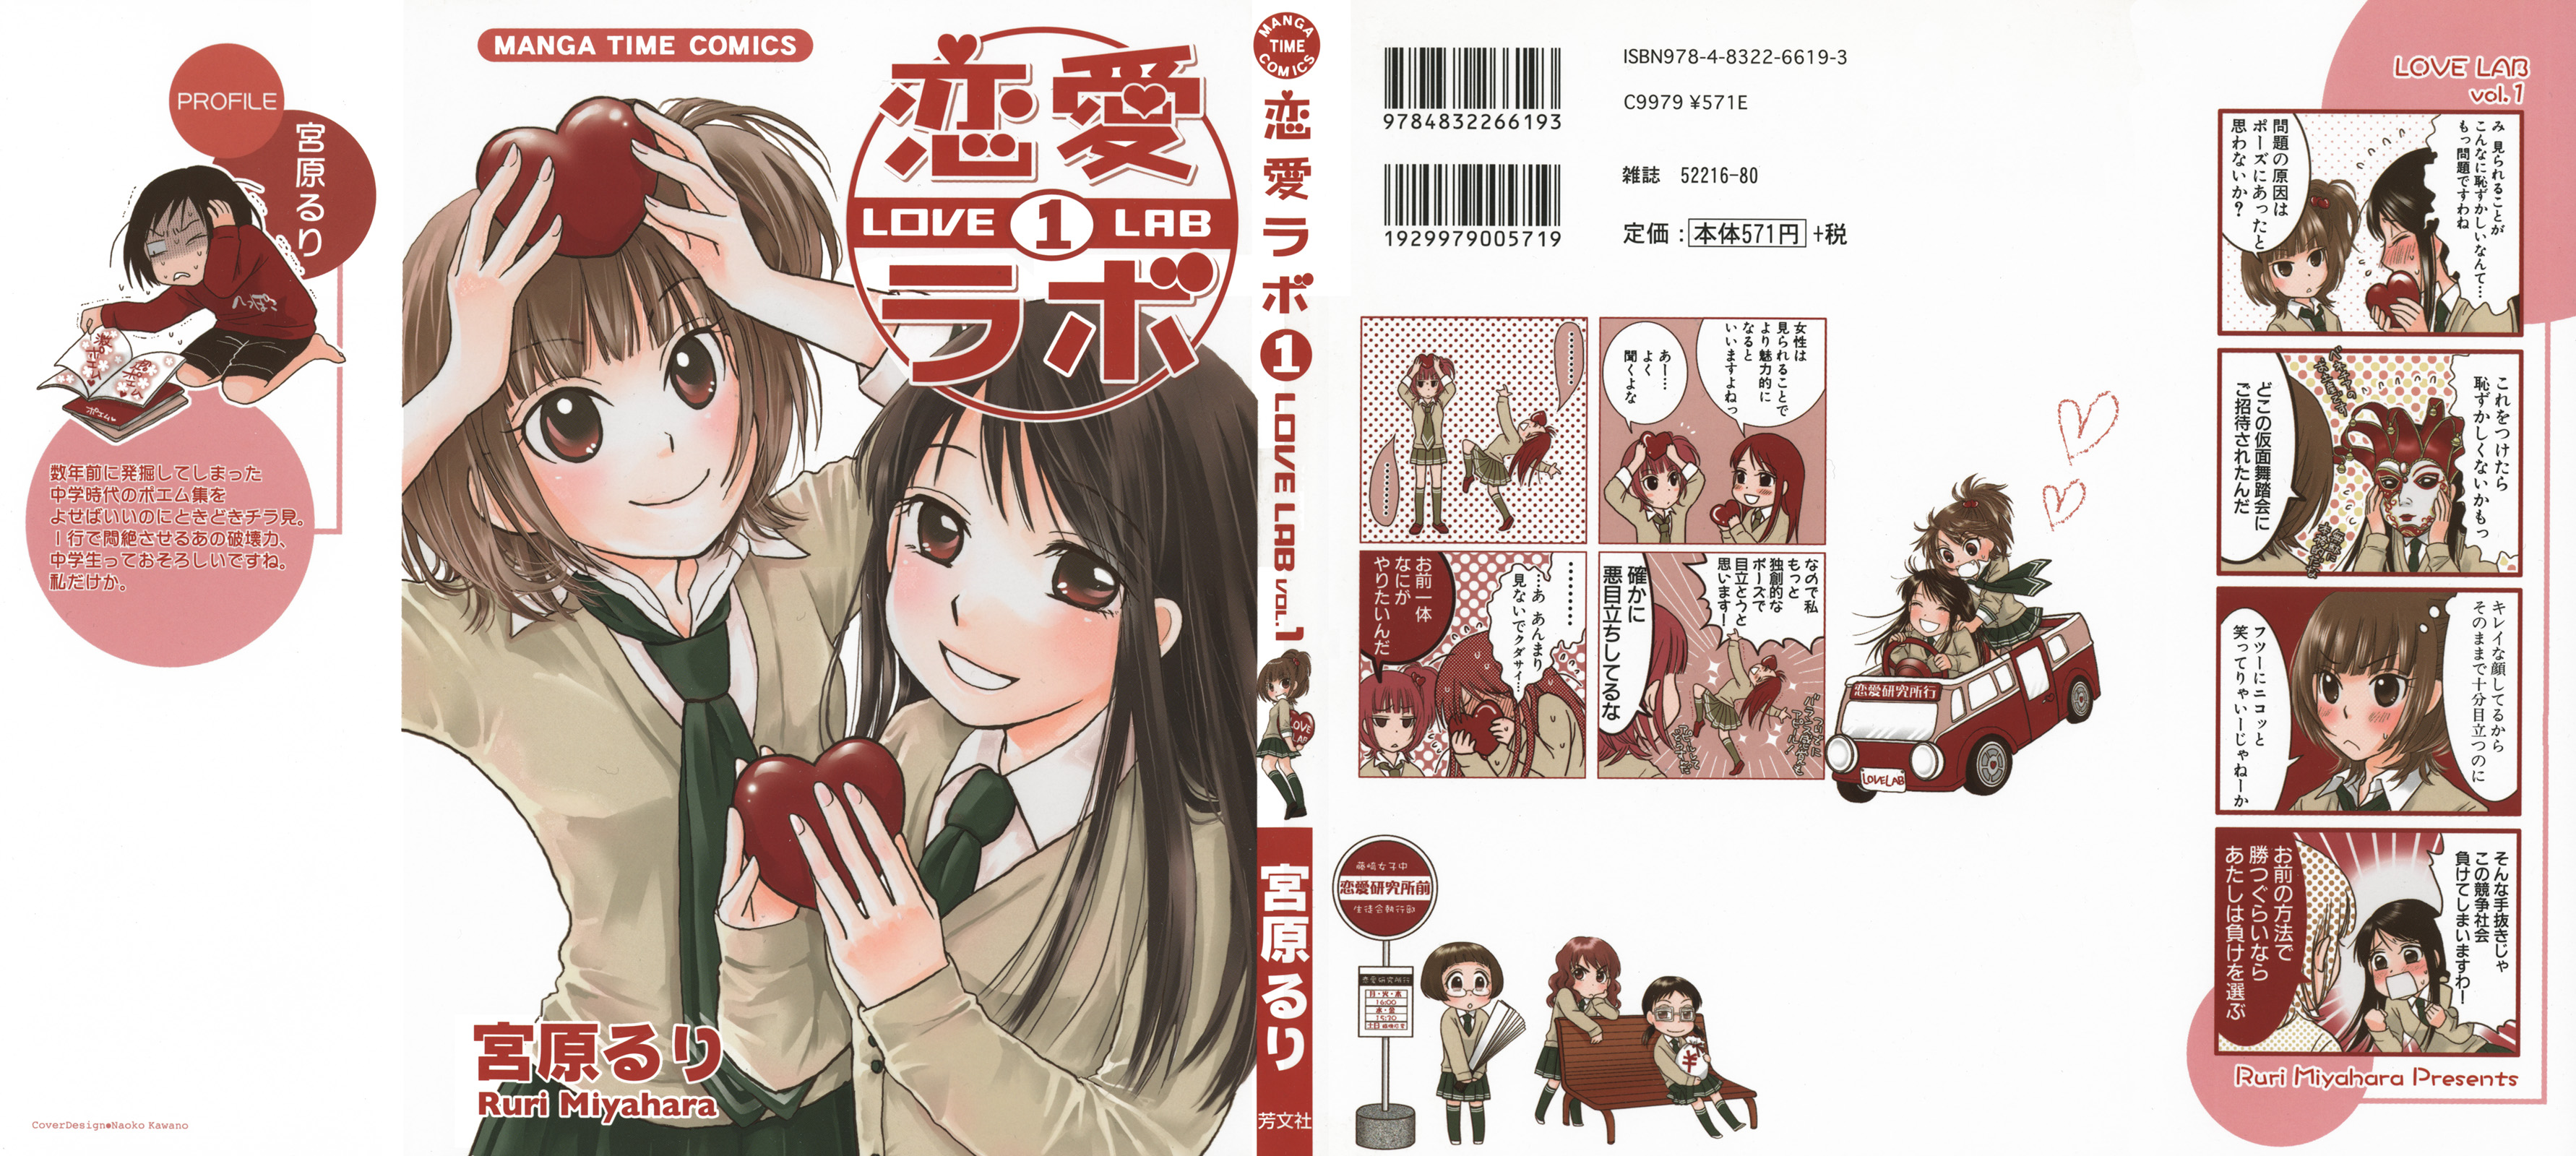 恋愛ラボ 9巻 Manga Townまんがタウン まんがまとめ 無料コミック漫画 ネタバレ